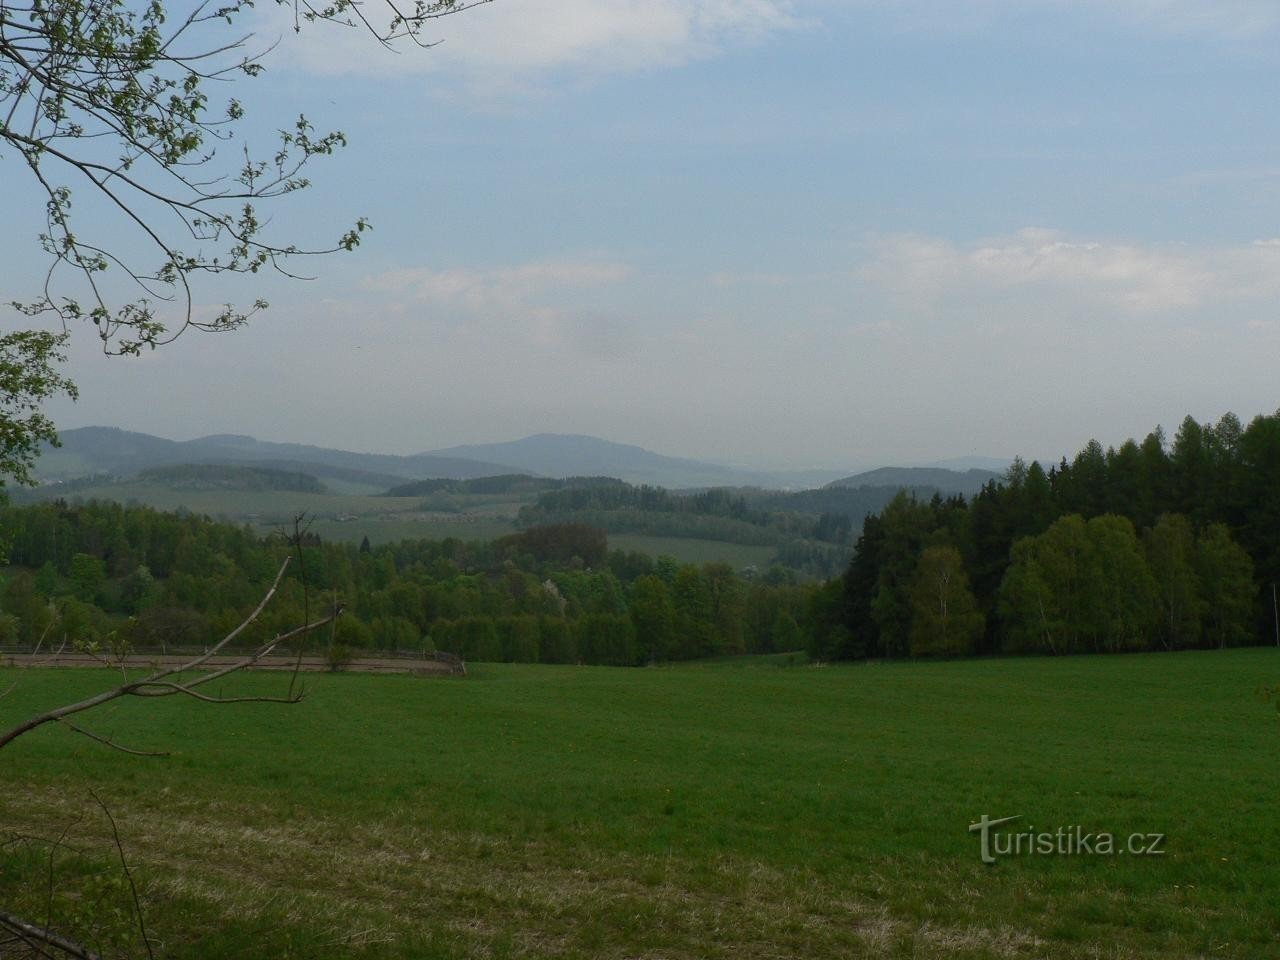 View from Velké Radkov to Svatobor